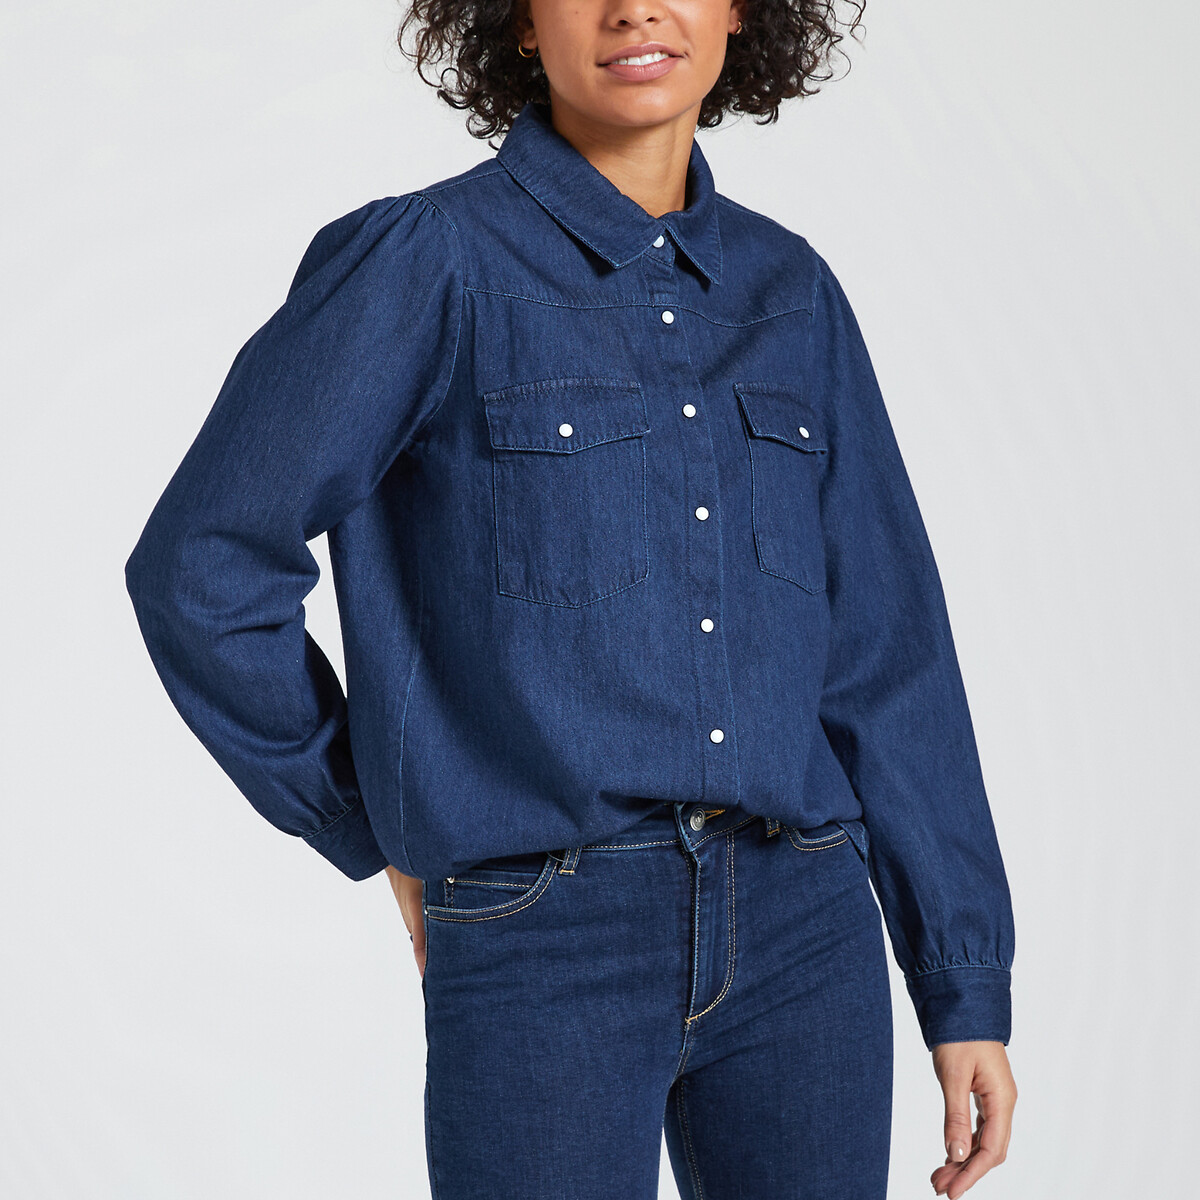 Рубашка из джинсовой ткани с длинными рукавами XS синий